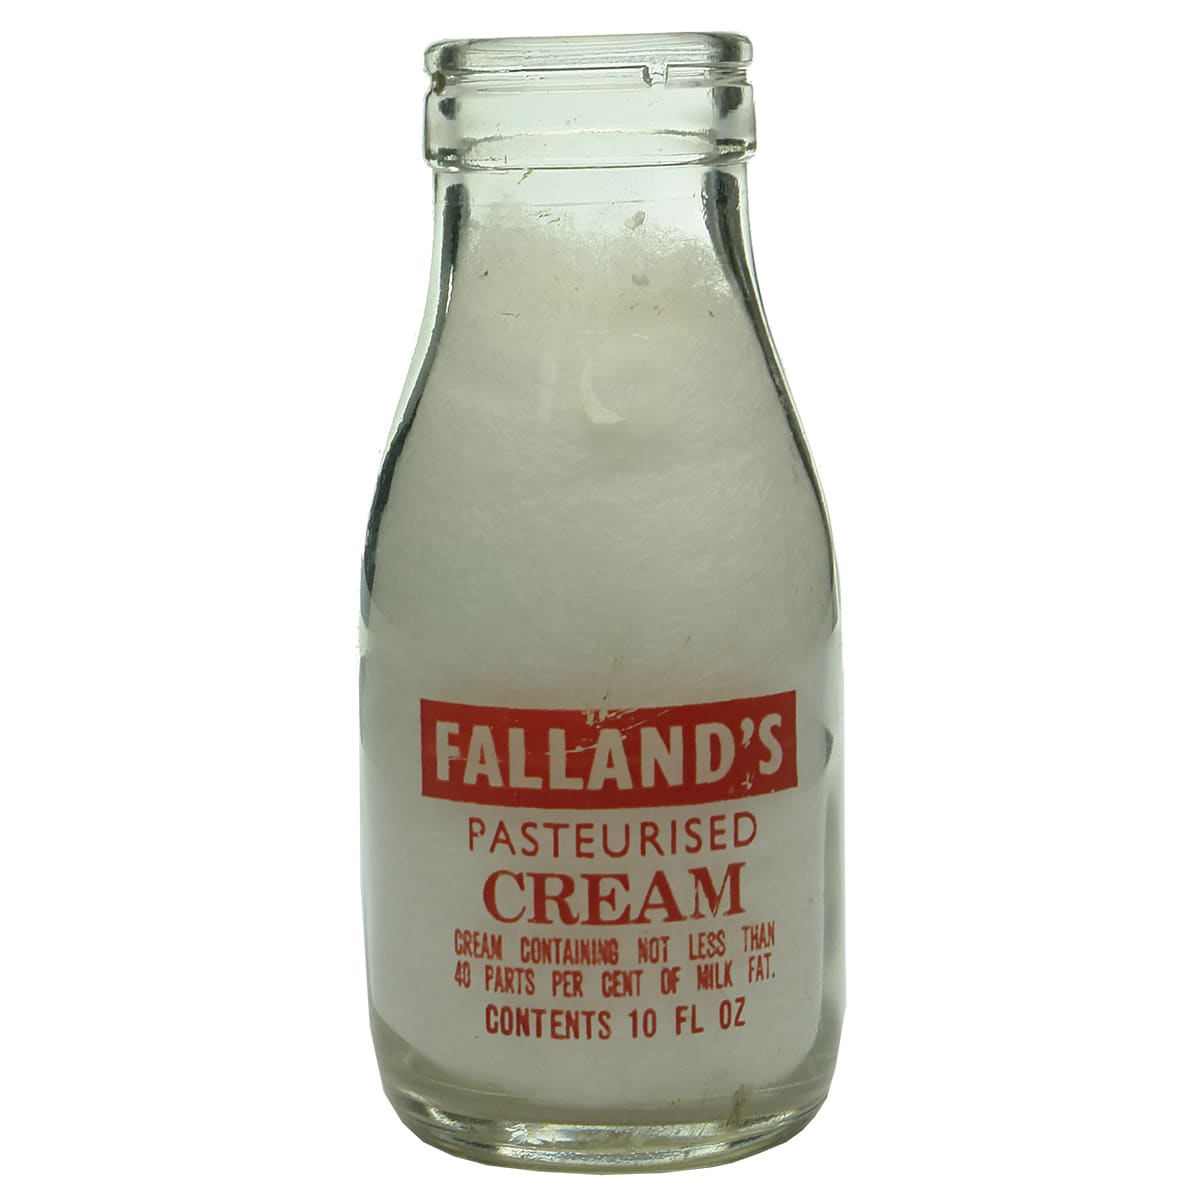 Milk. Falland's Pasteurised Cream, Renmark. Foil top. Ceramic label. 1/2 Pint. (South Australia)